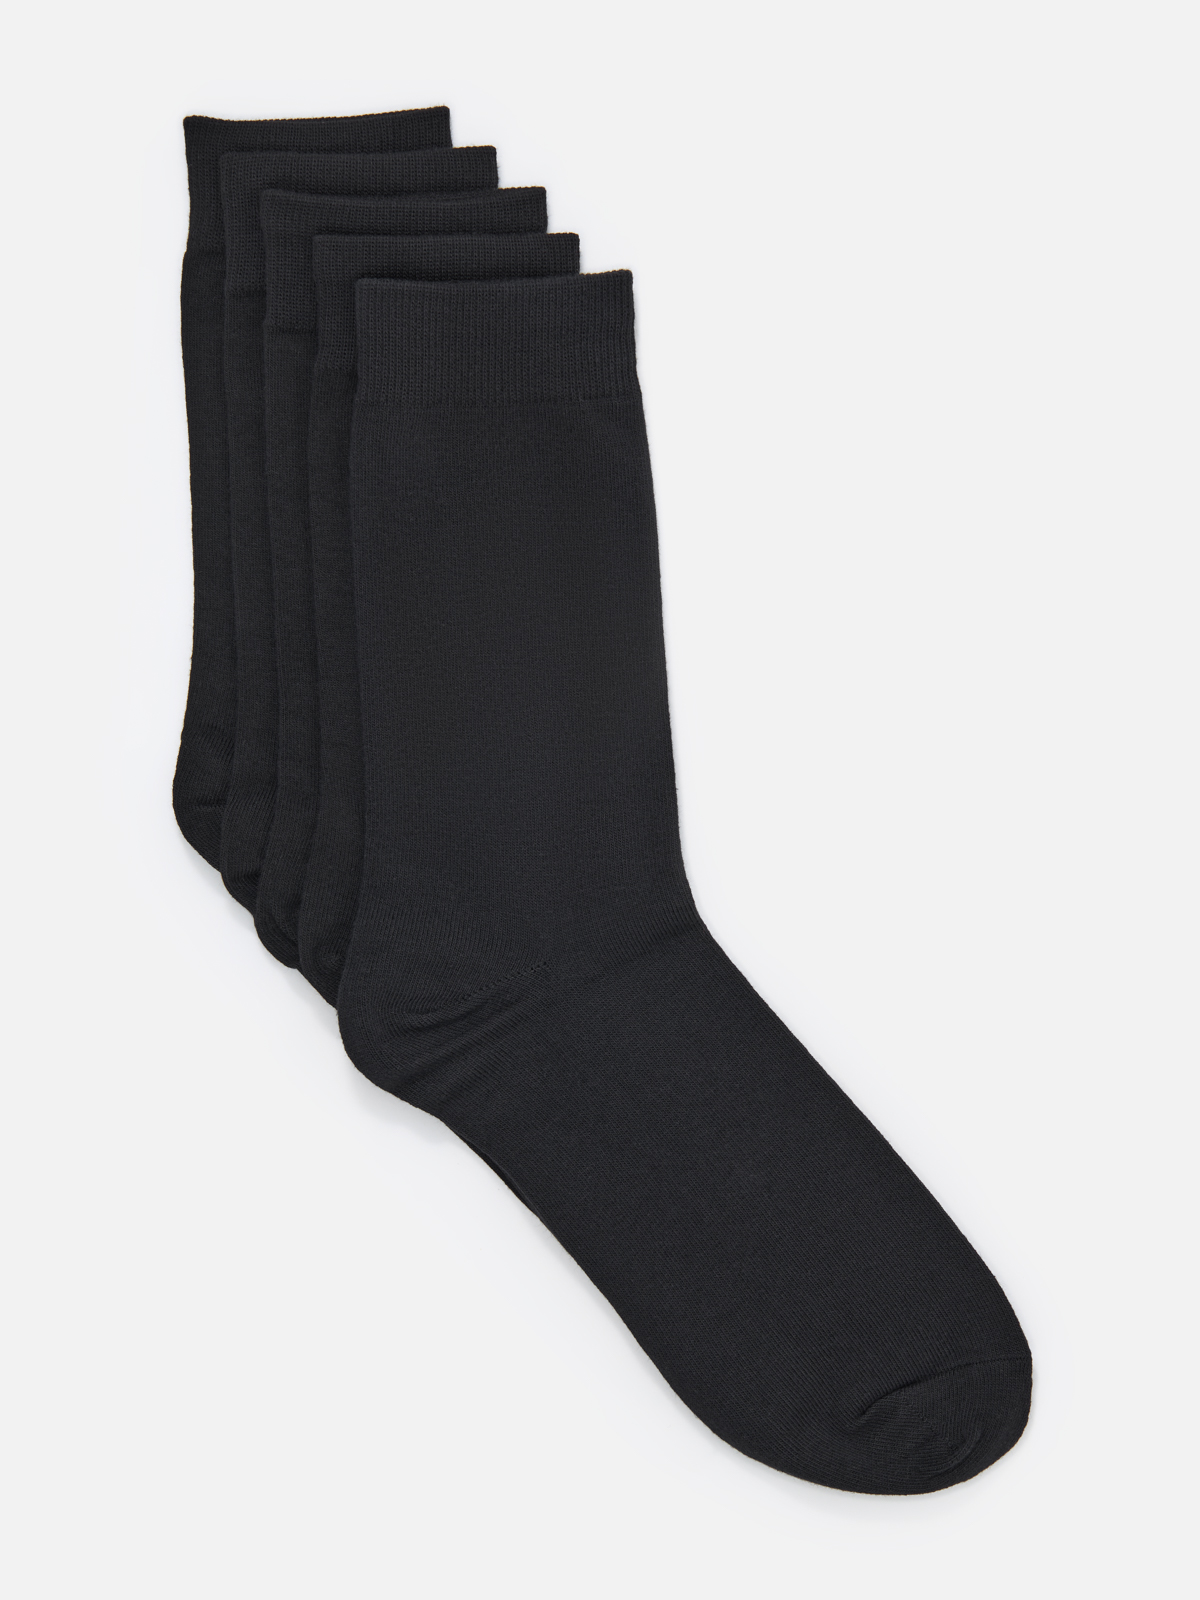 Комплект носков мужских Cotton & Quality 53001Т5 черных 40-43